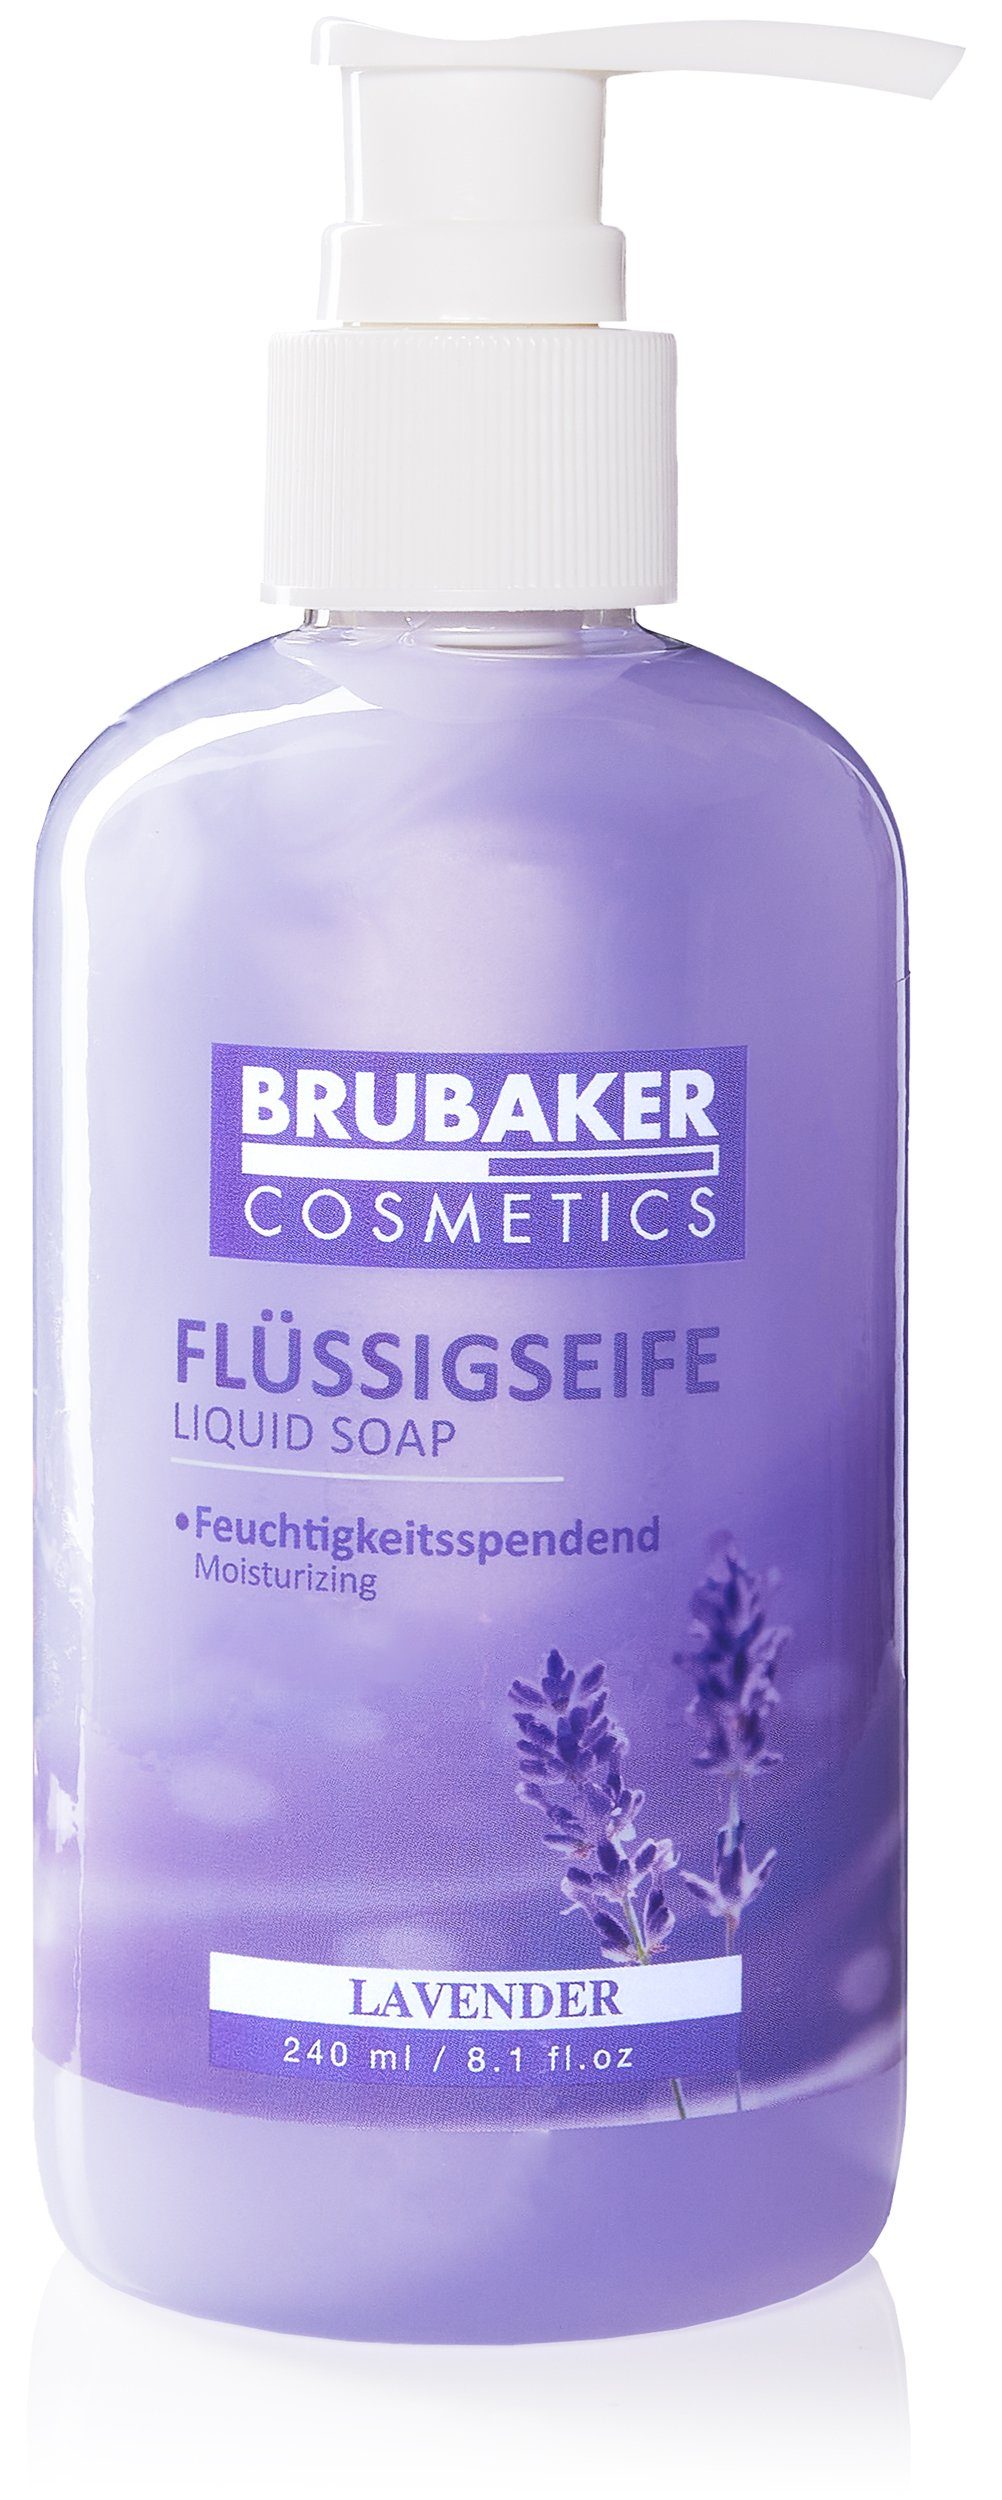 Flüssigseife Lavendel BRUBAKER Duft, Spender Handseife praktischen Seife flüssig feuchtigkeitsspendend, im 1-tlg., mit